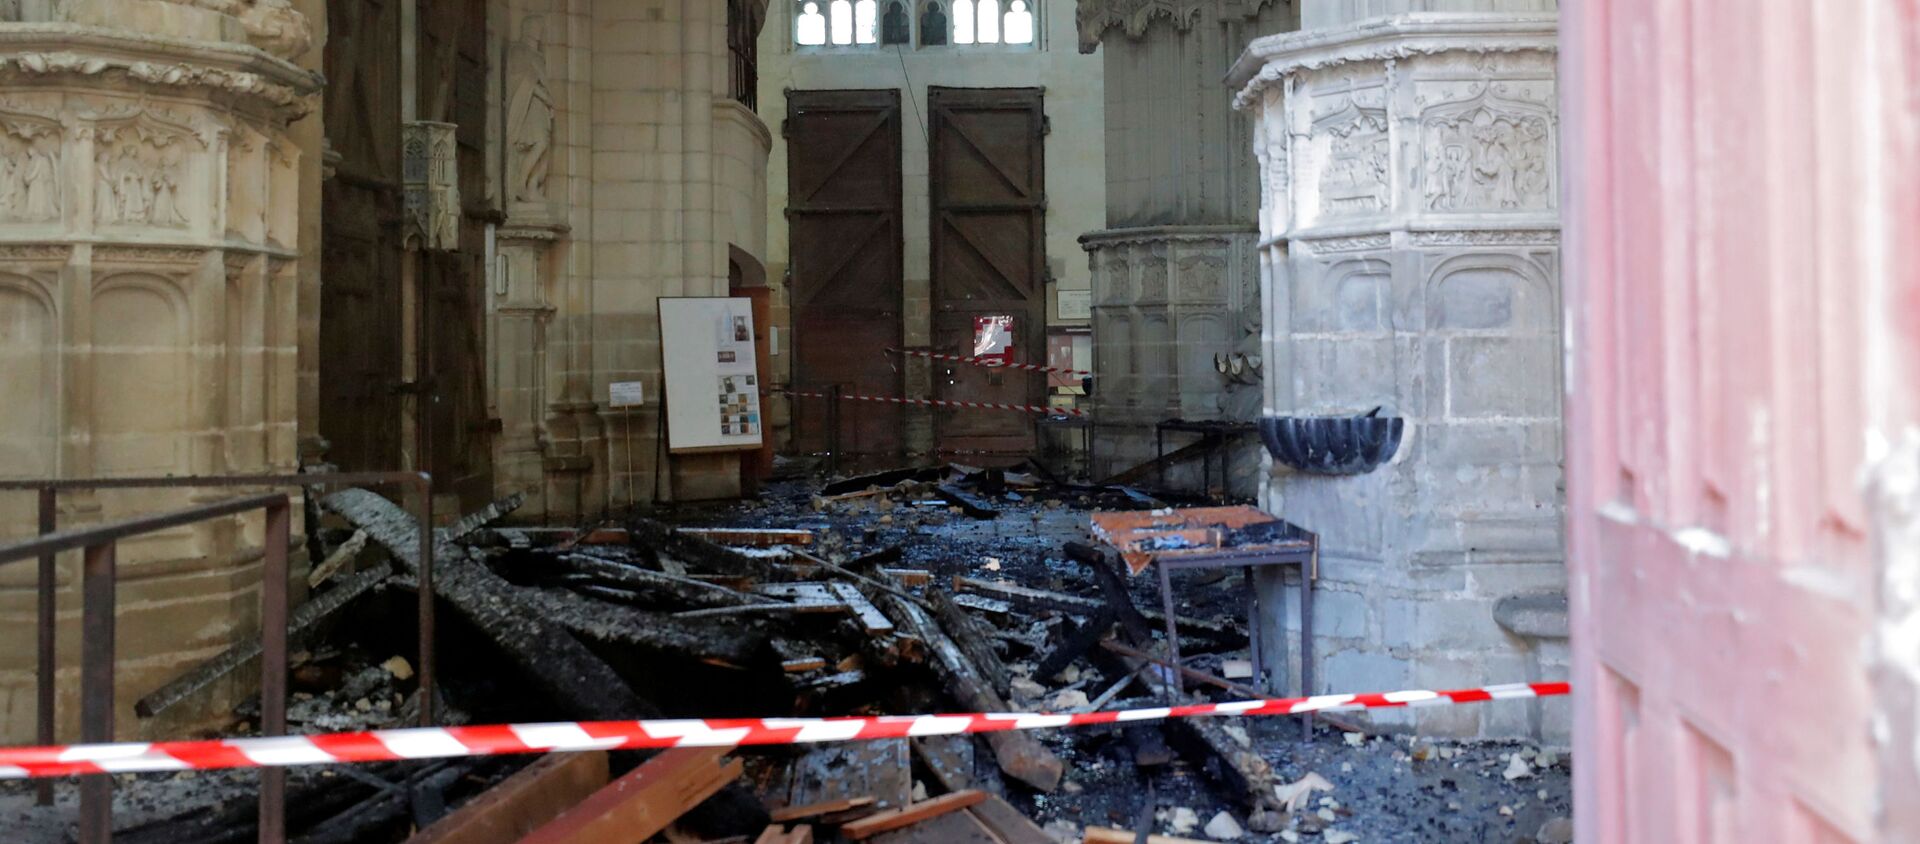 Las consecuencias del incendio en la catedral de Nantes, Francia - Sputnik Mundo, 1920, 18.07.2020